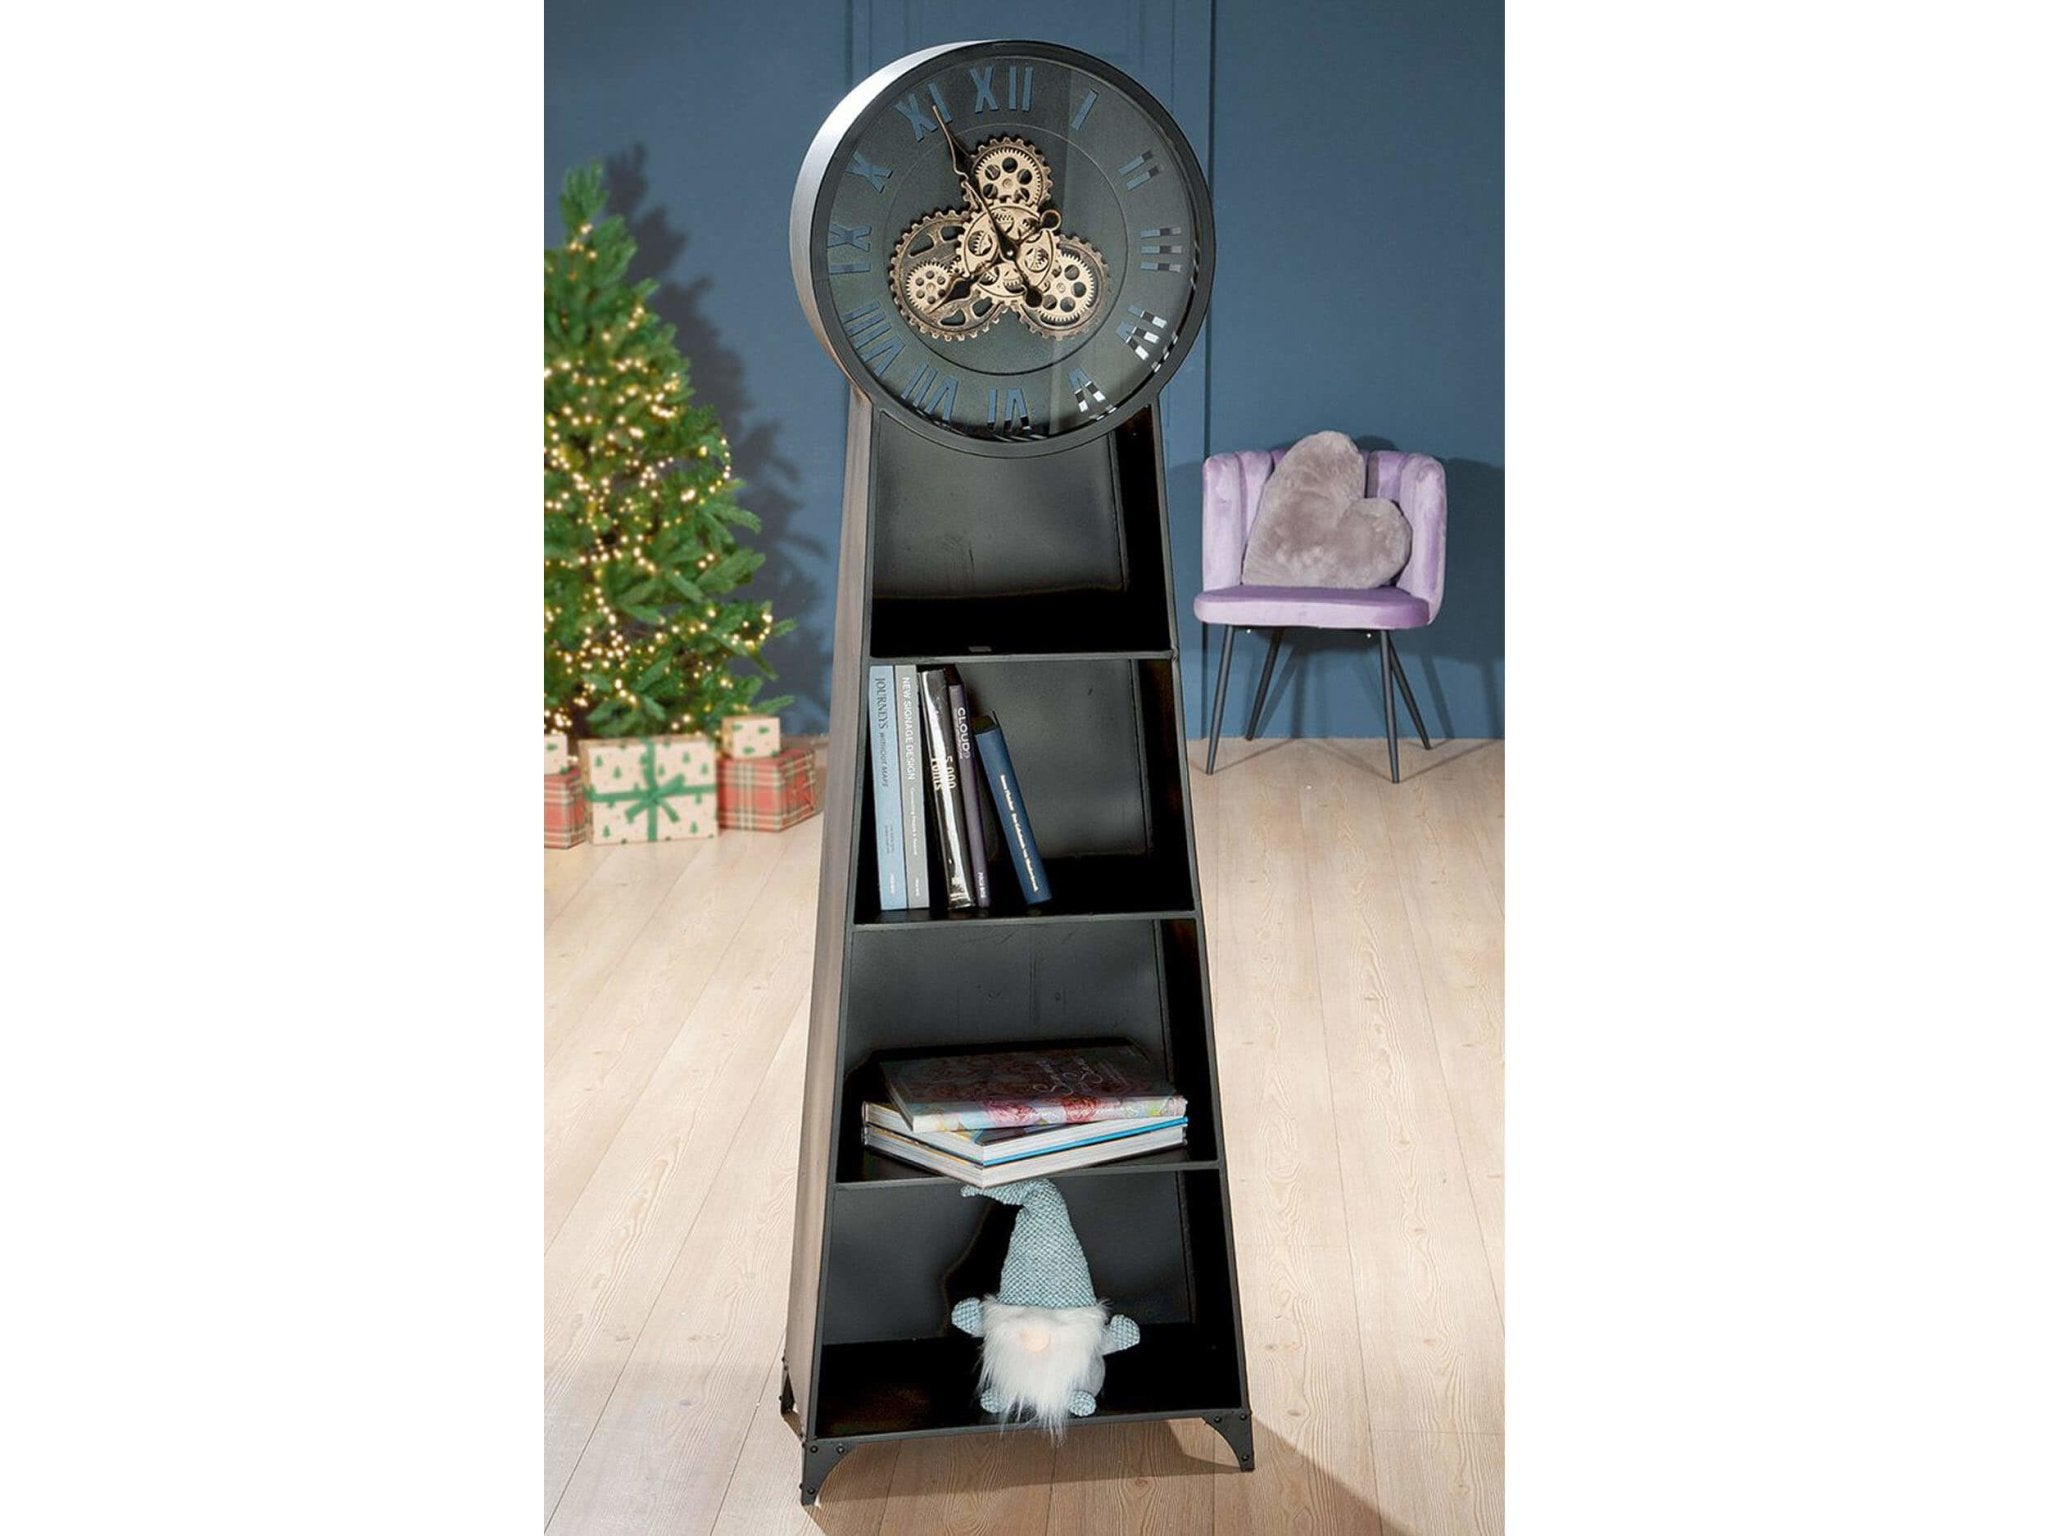 Boekenkast met grote klok in zwart metaal en houten legplanken